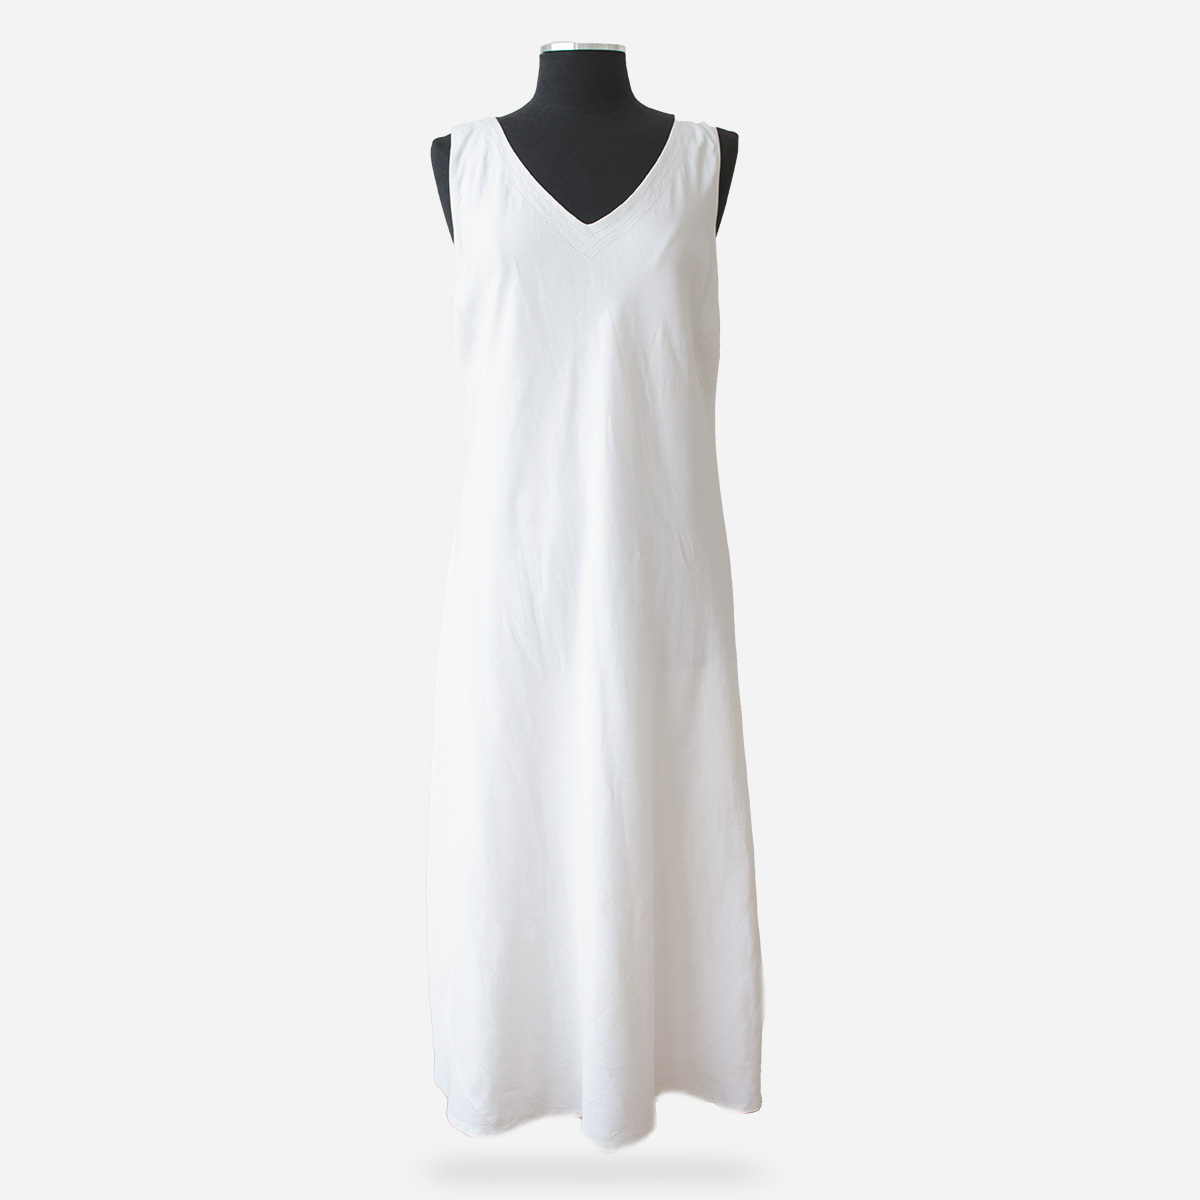 White sleeveless linen dress